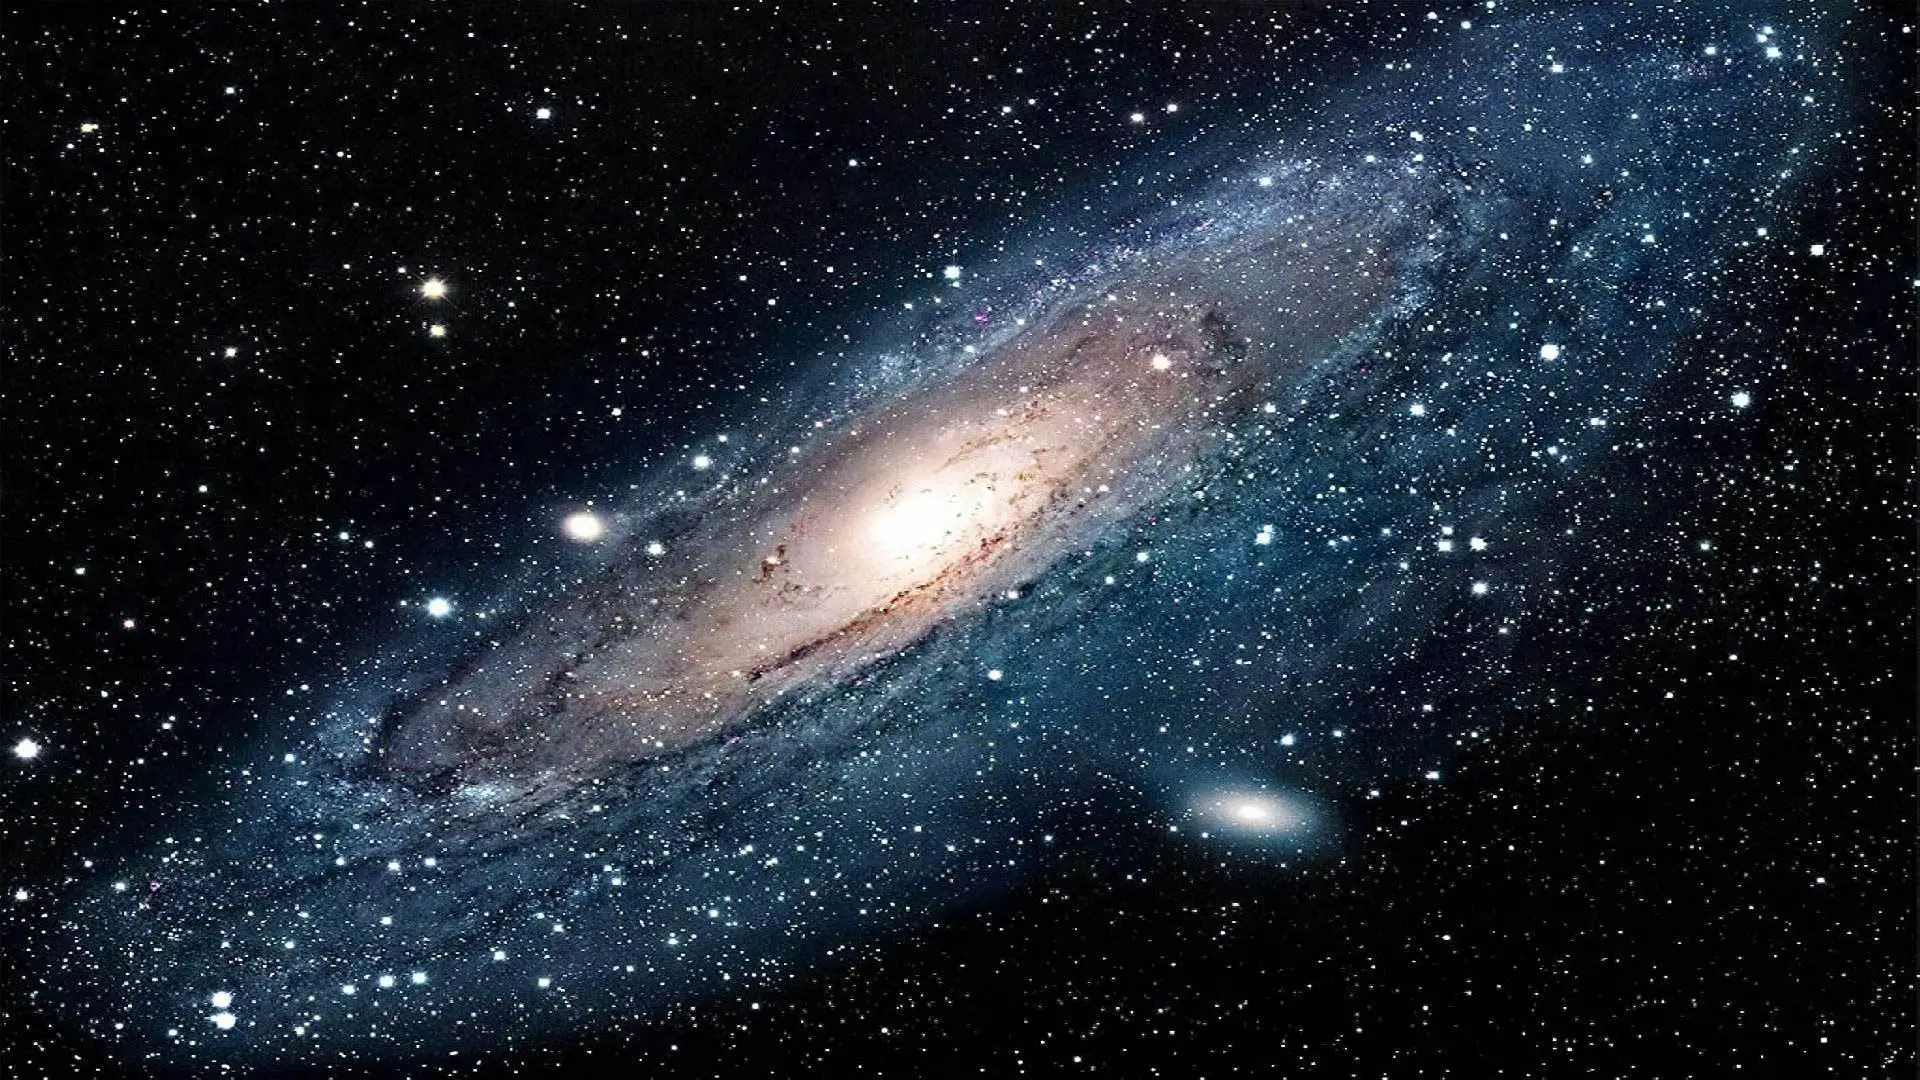 宇宙之外或许还有宇宙？根据科学推测，宇宙边缘可能是无限的